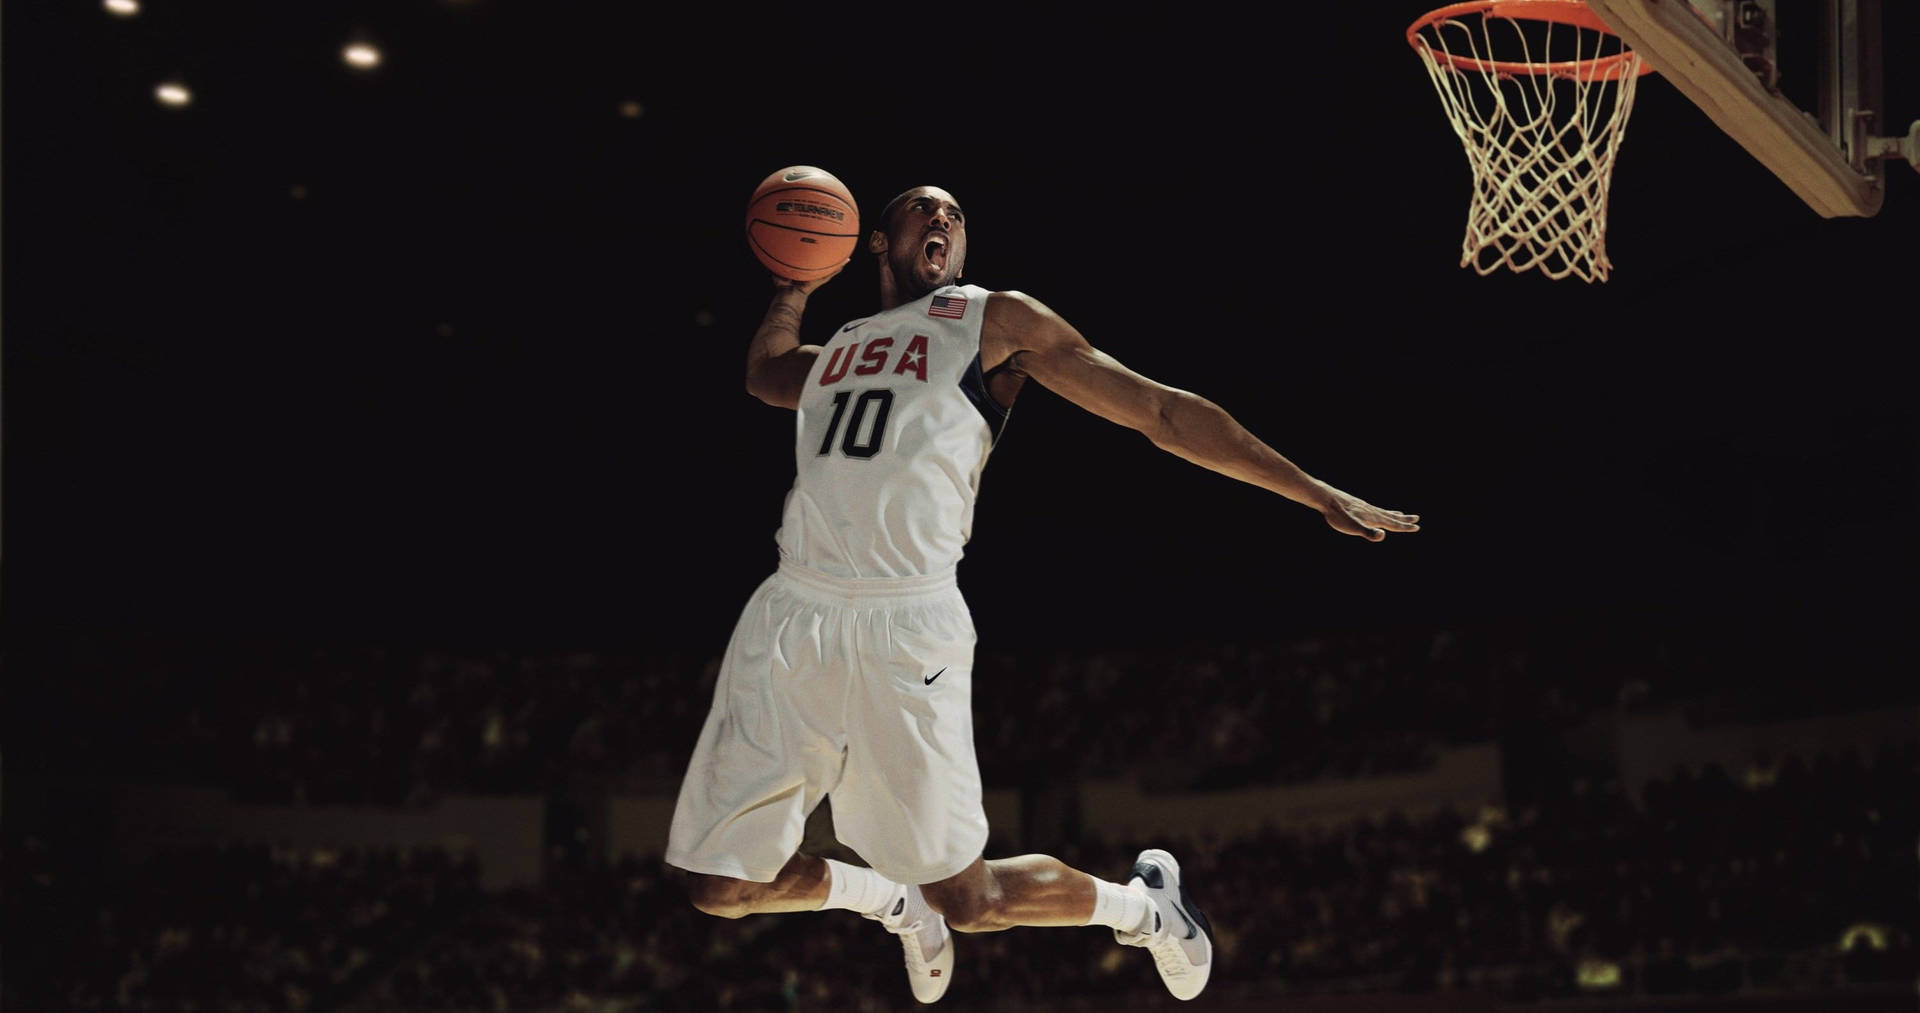 Hãy tải xuống những bức ảnh Kobe Bryant 4K Wallpaper muôn năm miễn phí và đưa sự năng động của bóng rổ tới cuộc sống thường nhật của bạn. Bạn sẽ cảm thấy hứng khởi và khích lệ mỗi khi nhìn vào những bức ảnh đẹp như hình nền này.